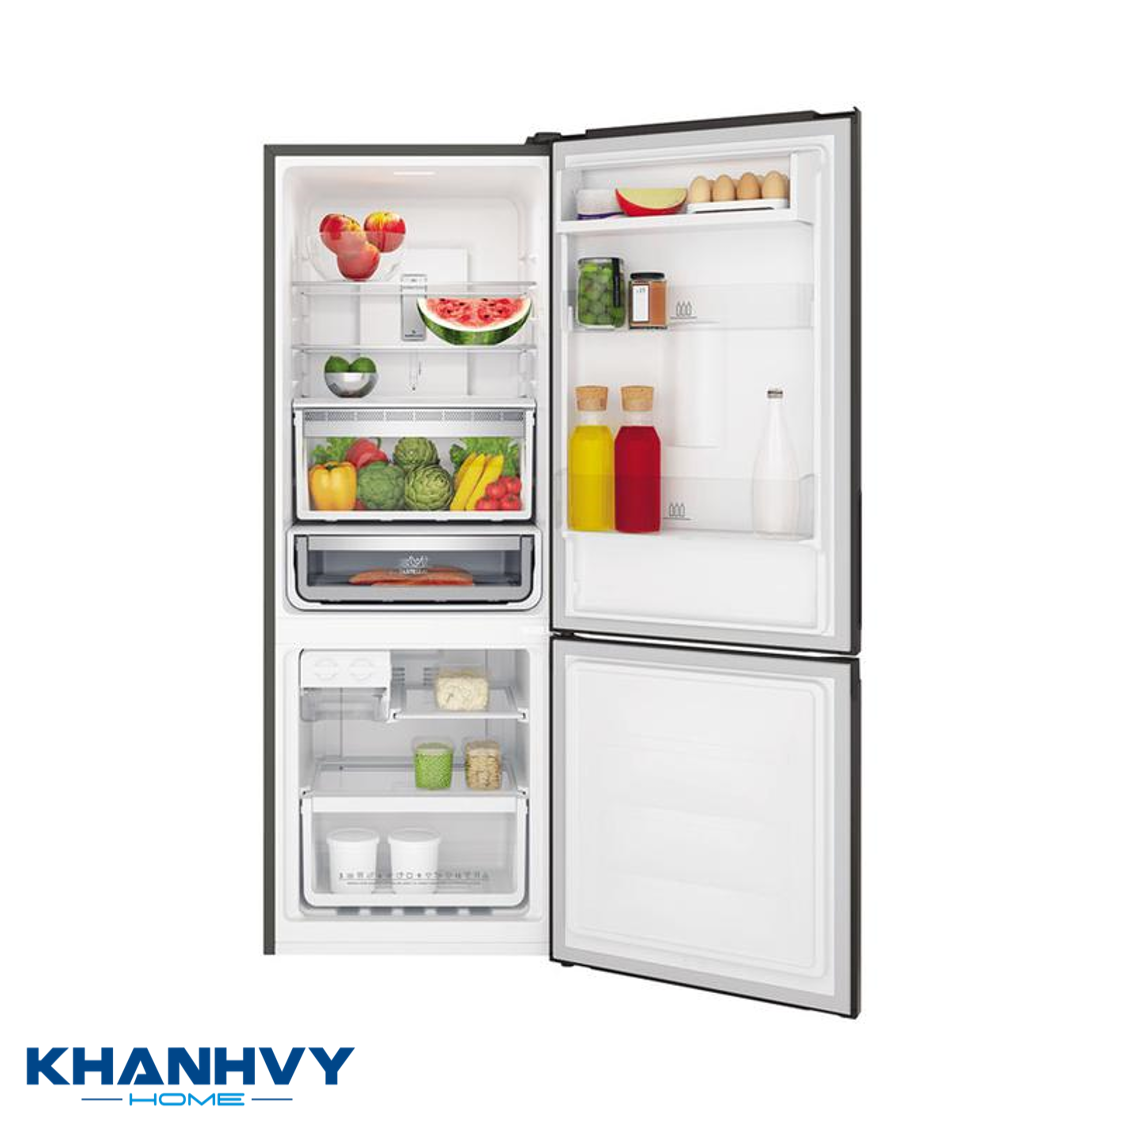 Tủ lạnh Electrolux EBB3402K-H được thiết kế hiện đại và sang trọng, thích hợp cho 2 – 3 người sử dụng